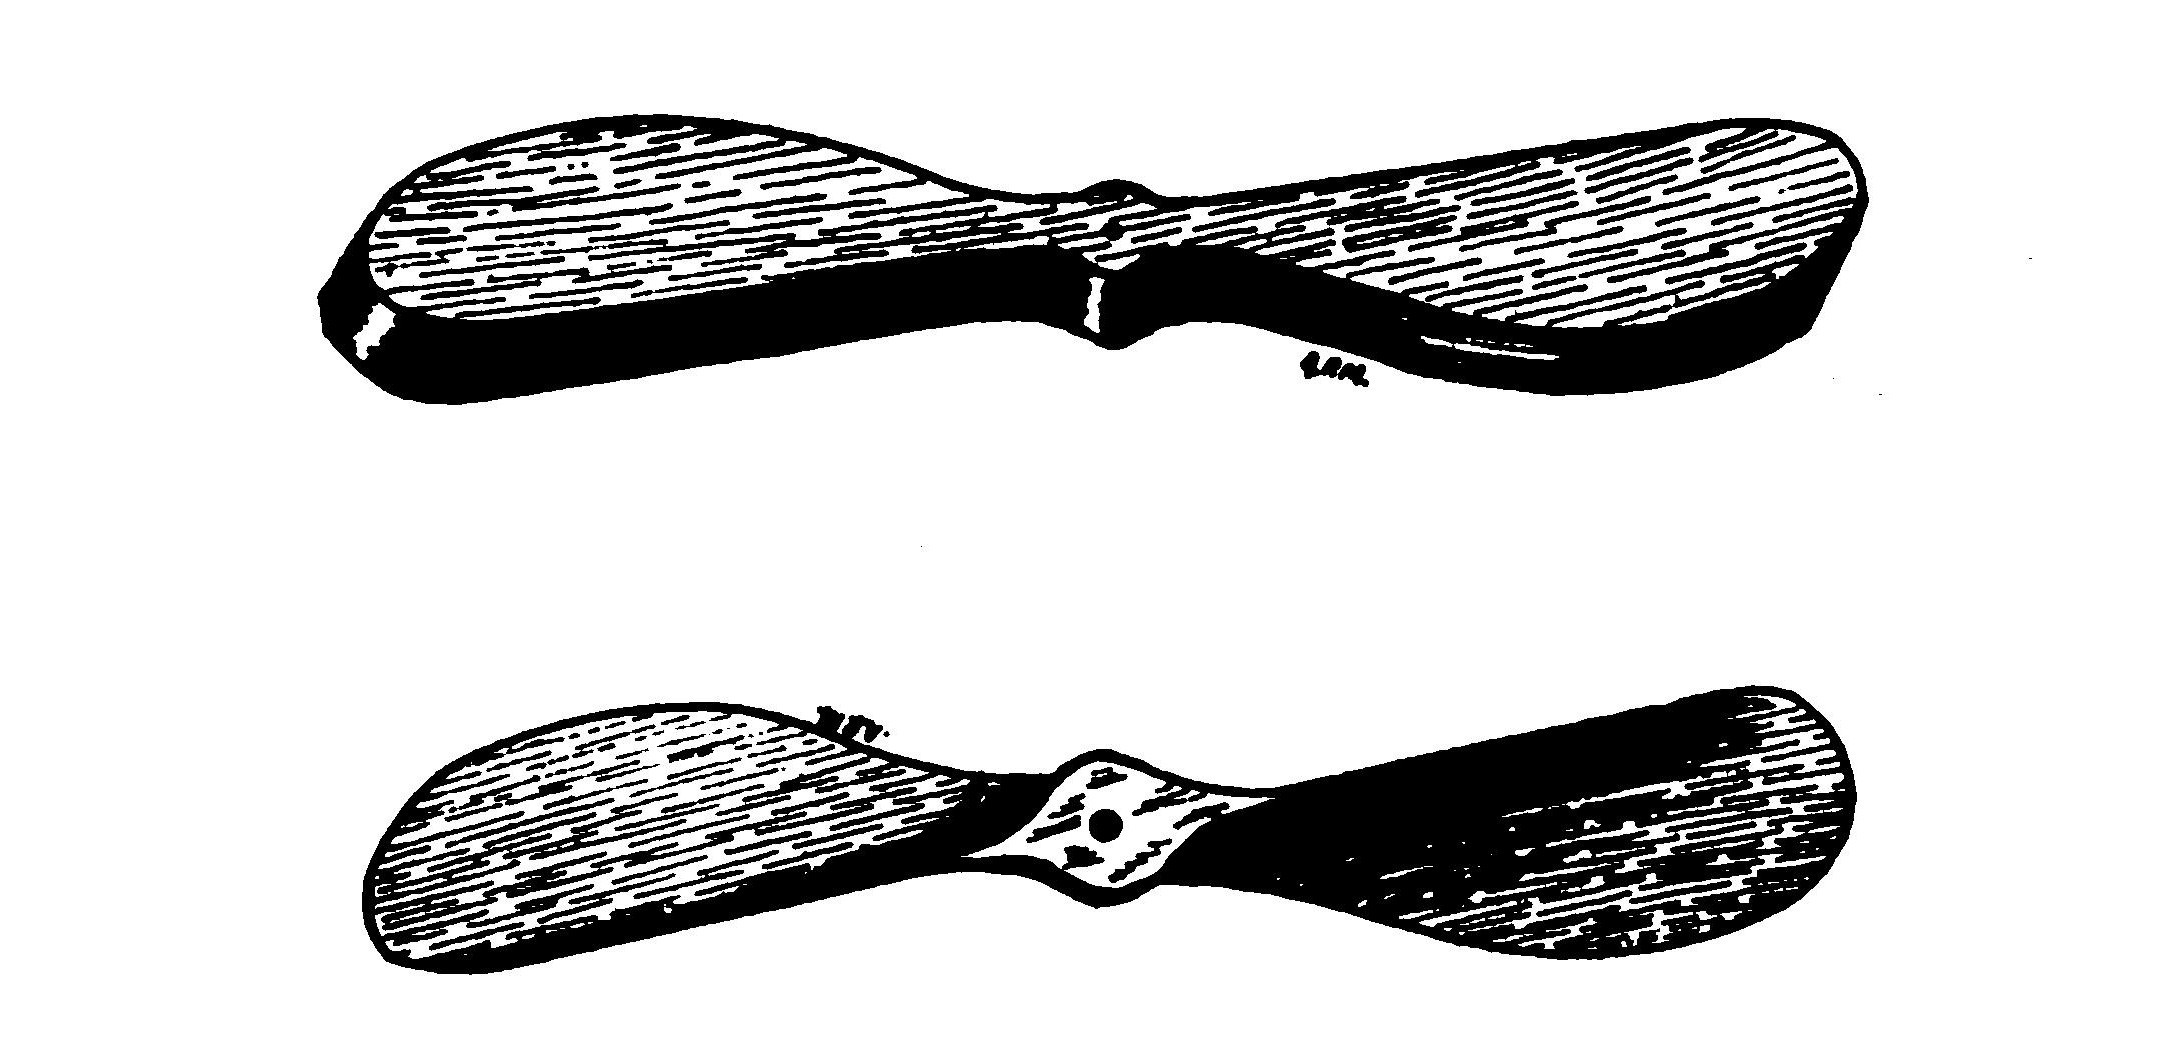 FIG. 36. Propeller blank (top). Carved propeller (bottom).